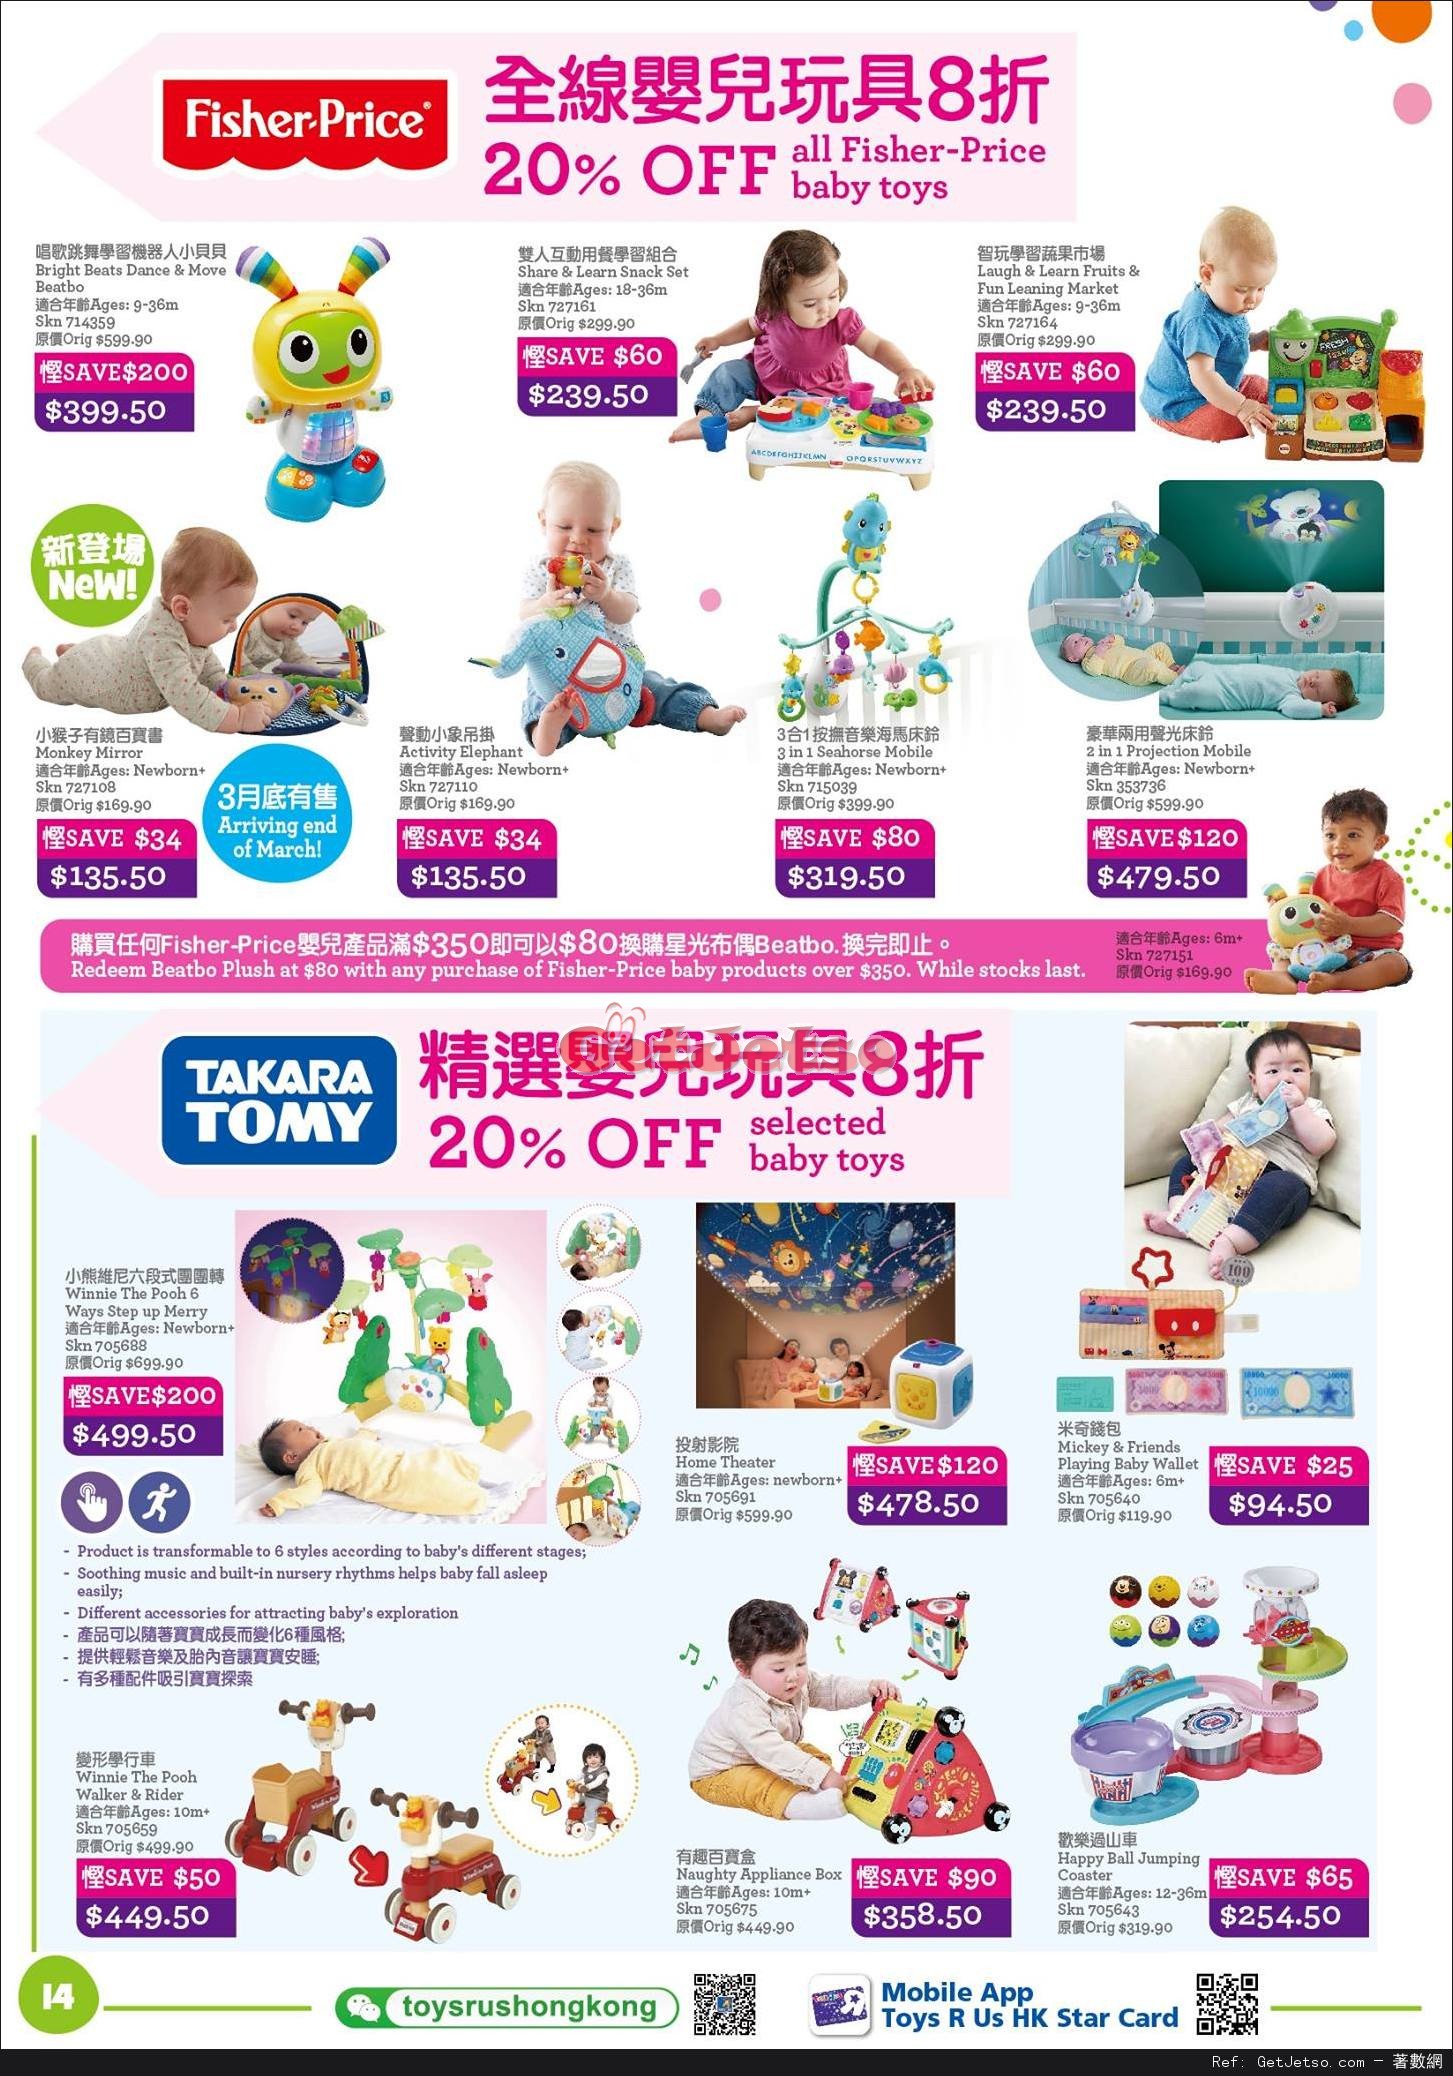 玩具反斗城Toys"R"Us 嬰兒用品低至2折開倉優惠(至17年4月18日)圖片14